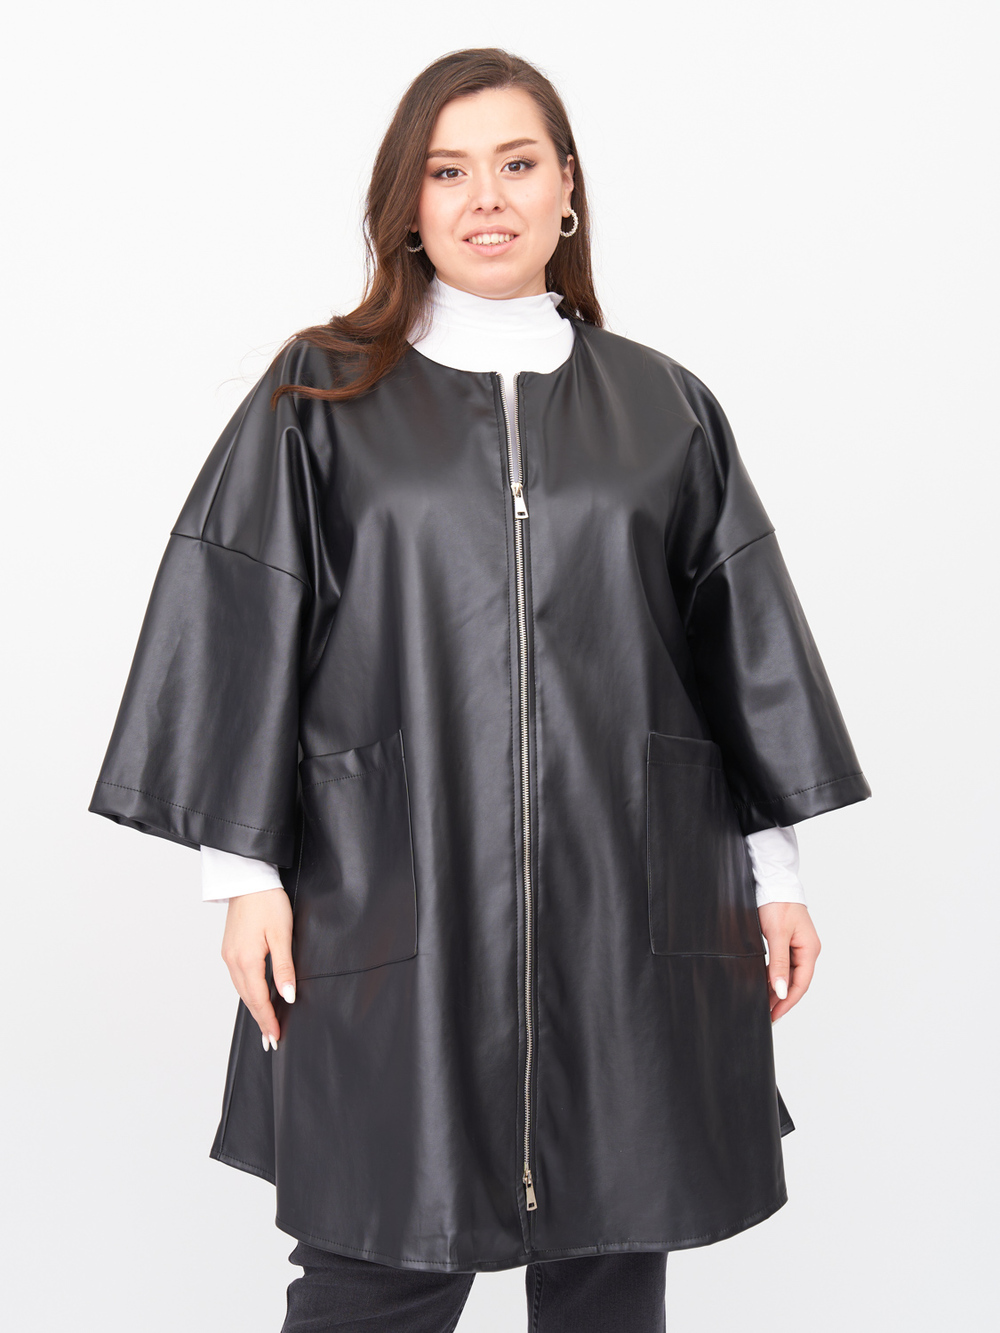 Пальто женское ZORY ZPL20021BLK01 черное 64-66 RU